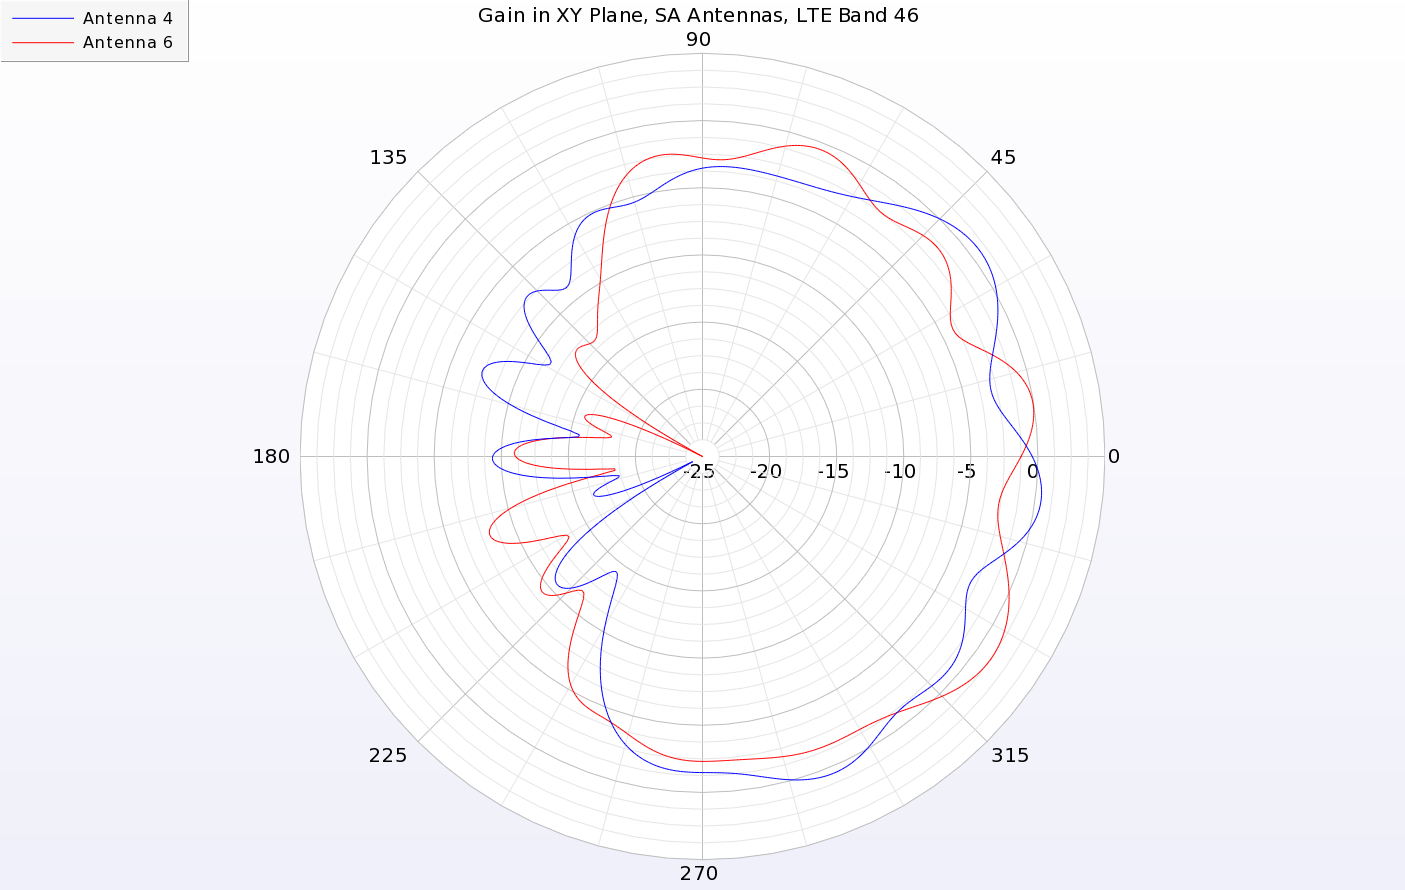 图 12：与 LA 天线类似，SA 天线的增益峰值位于设备外缘。图中 4 号和 6 号天线的增益峰值位于 +X 方向。